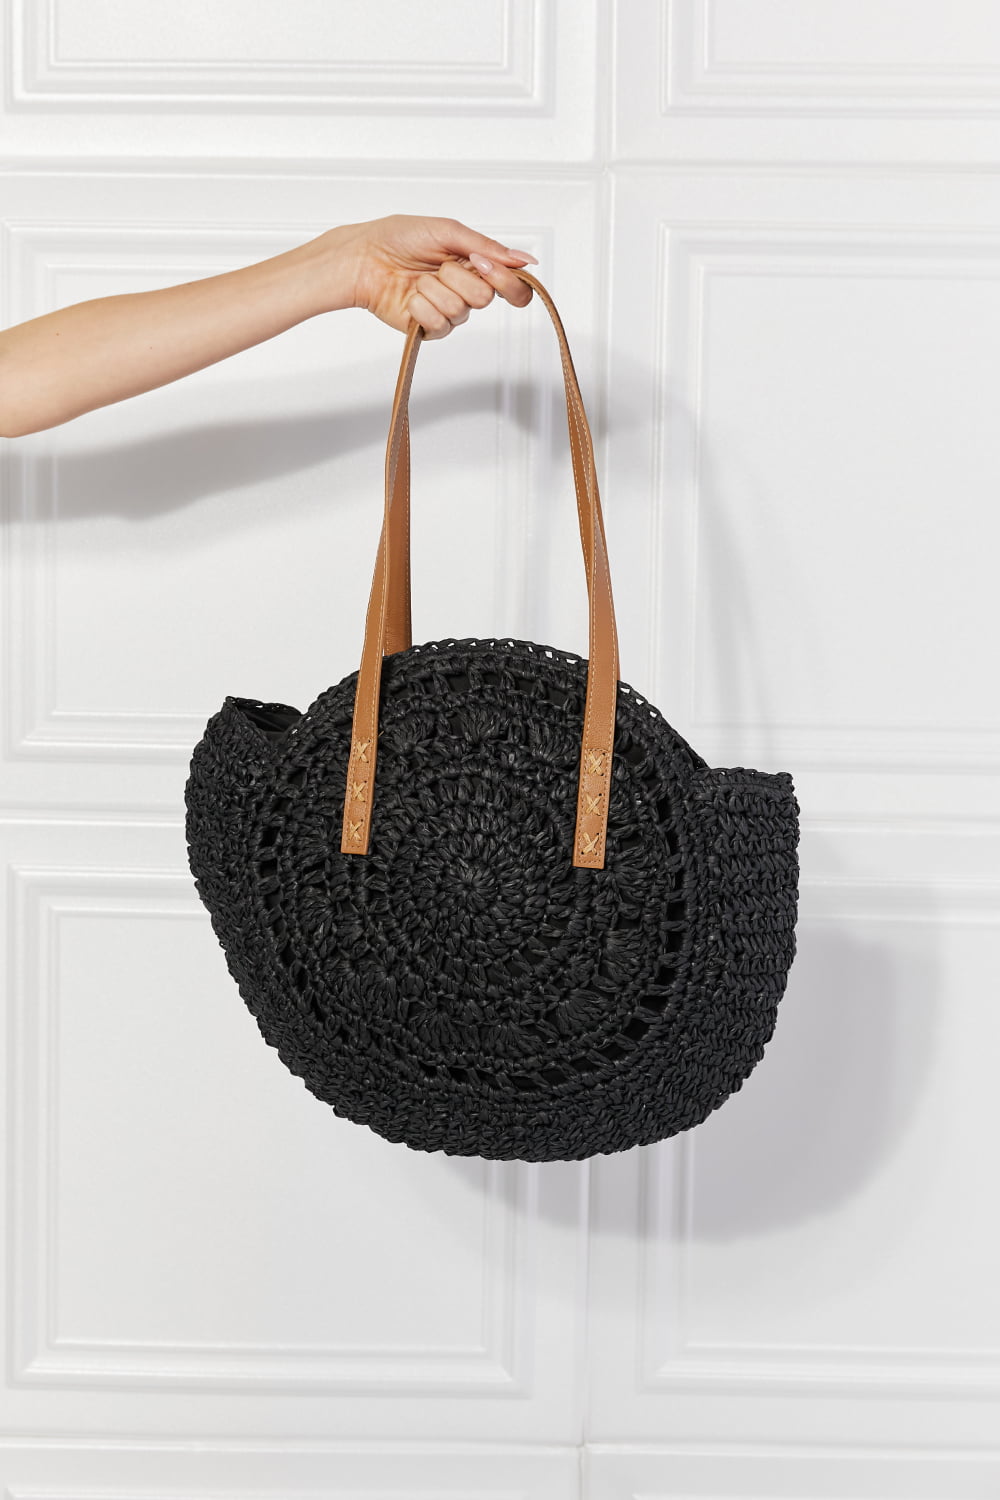 Justin Taylor C'est La Vie Crochet Handbag in Black - nailedmoms